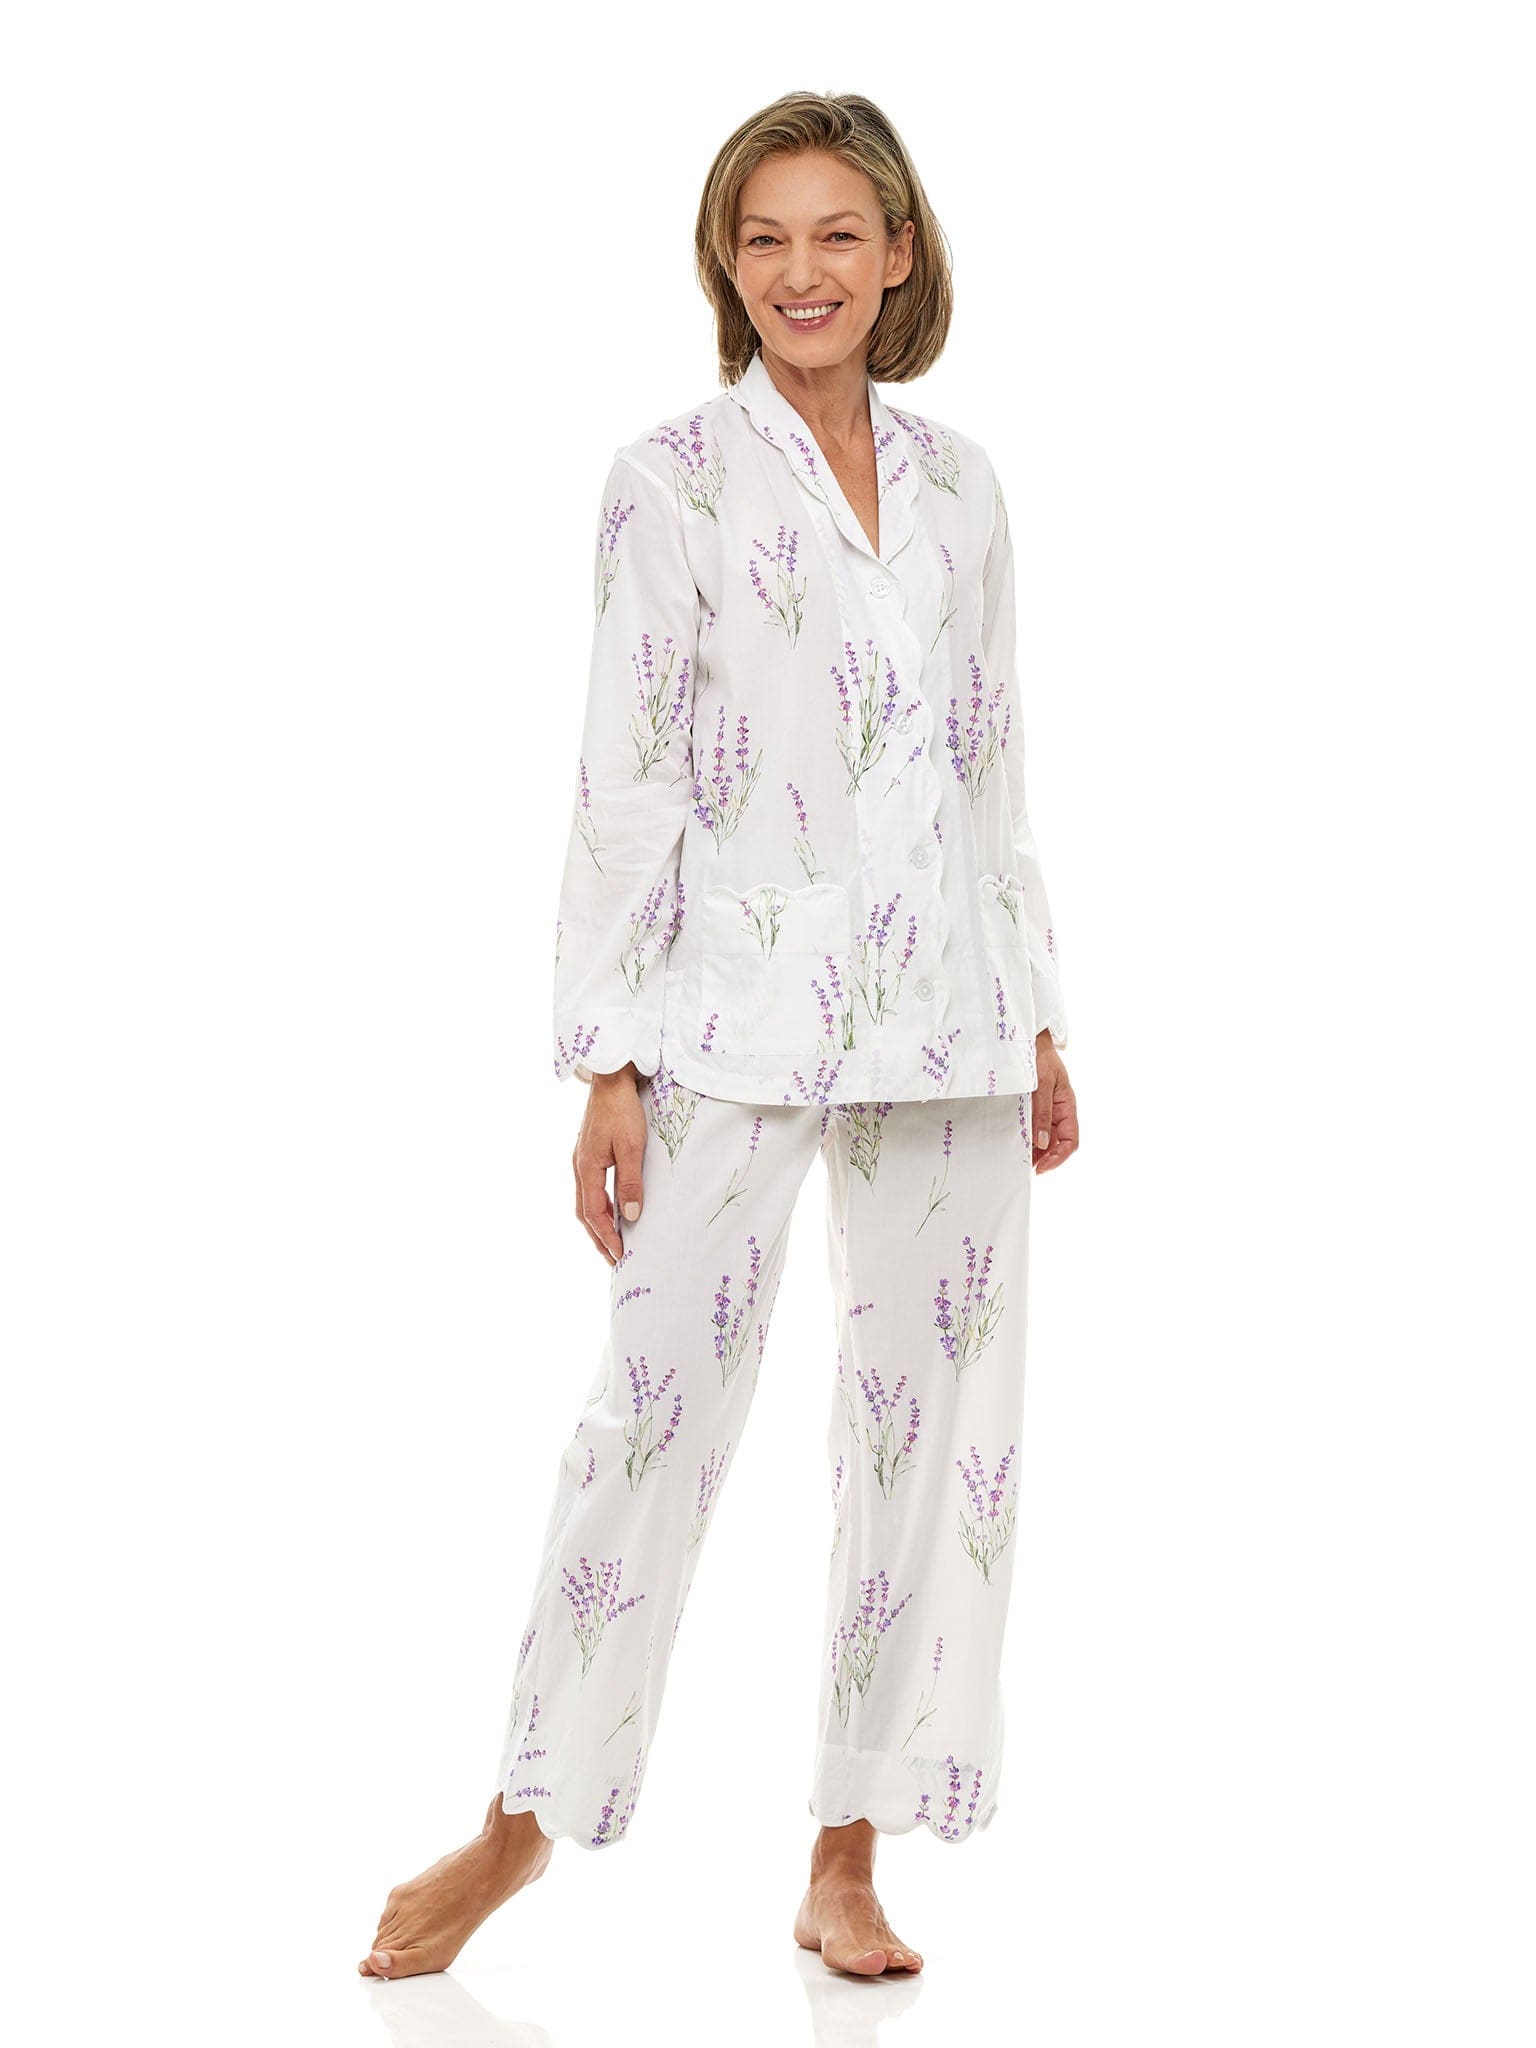 Lavender Print Pajamas – Heidi Carey